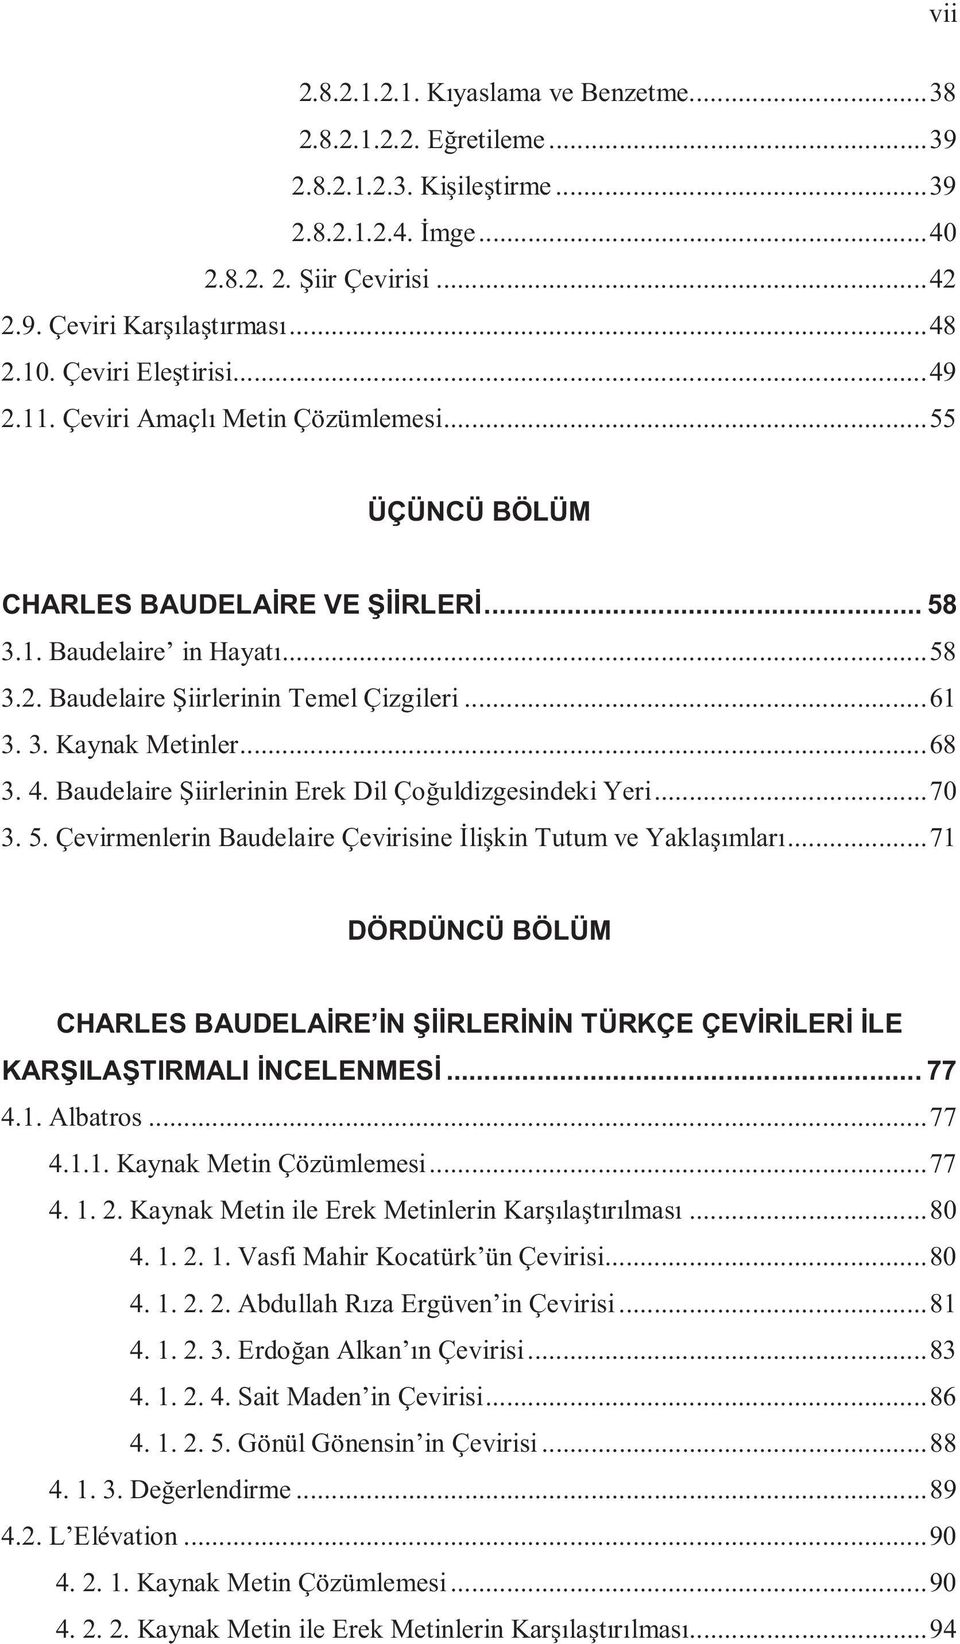 3. Kaynak Metinler... 68 3. 4. Baudelaire Şiirlerinin Erek Dil Çoğuldizgesindeki Yeri... 70 3. 5. Çevirmenlerin Baudelaire Çevirisine İlişkin Tutum ve Yaklaşımları.